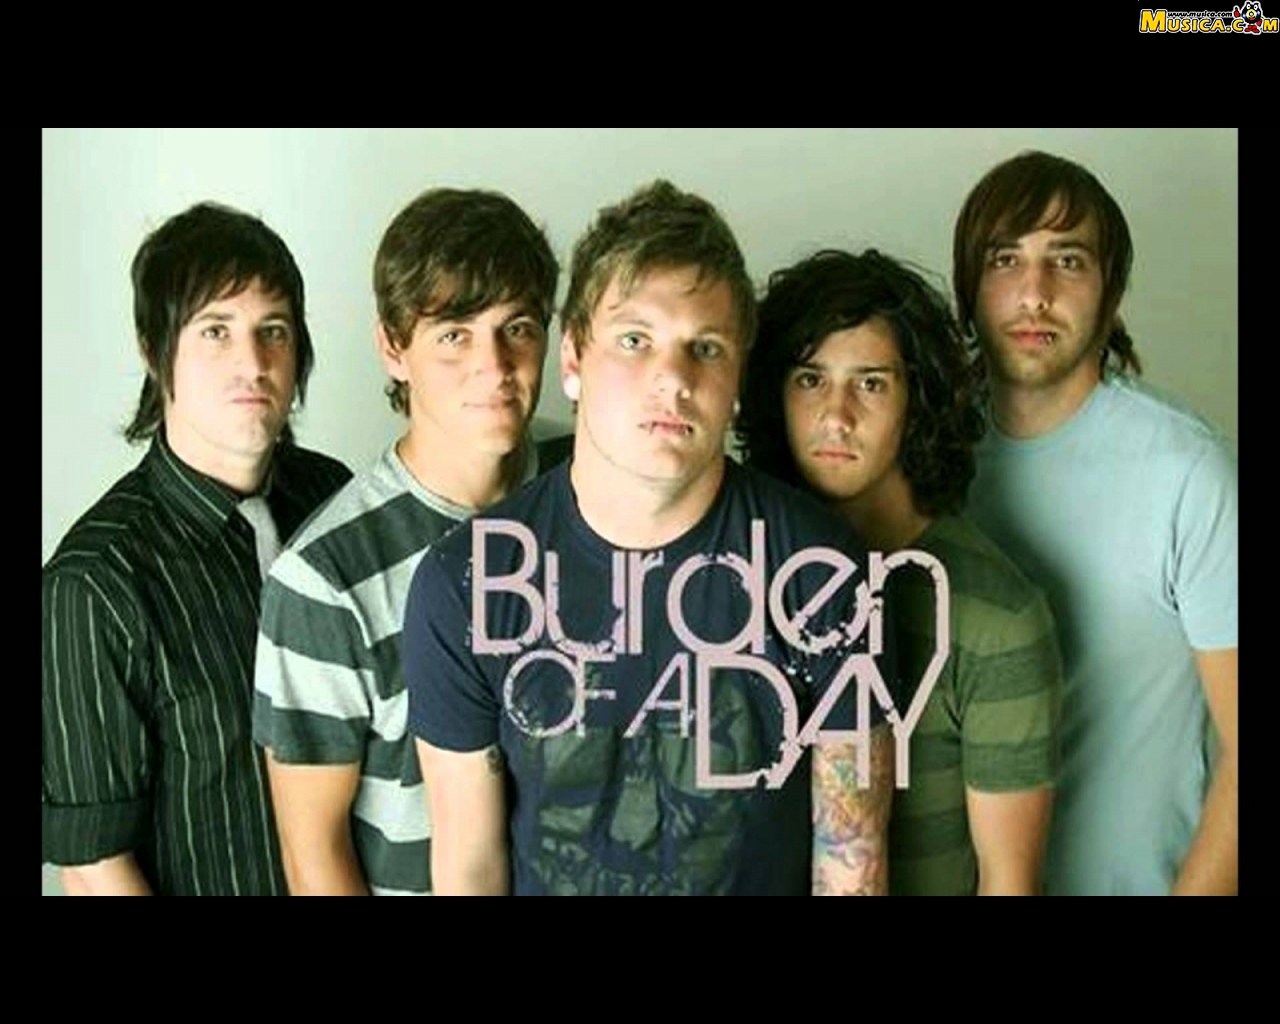 Fondo de pantalla de Burden of a Day